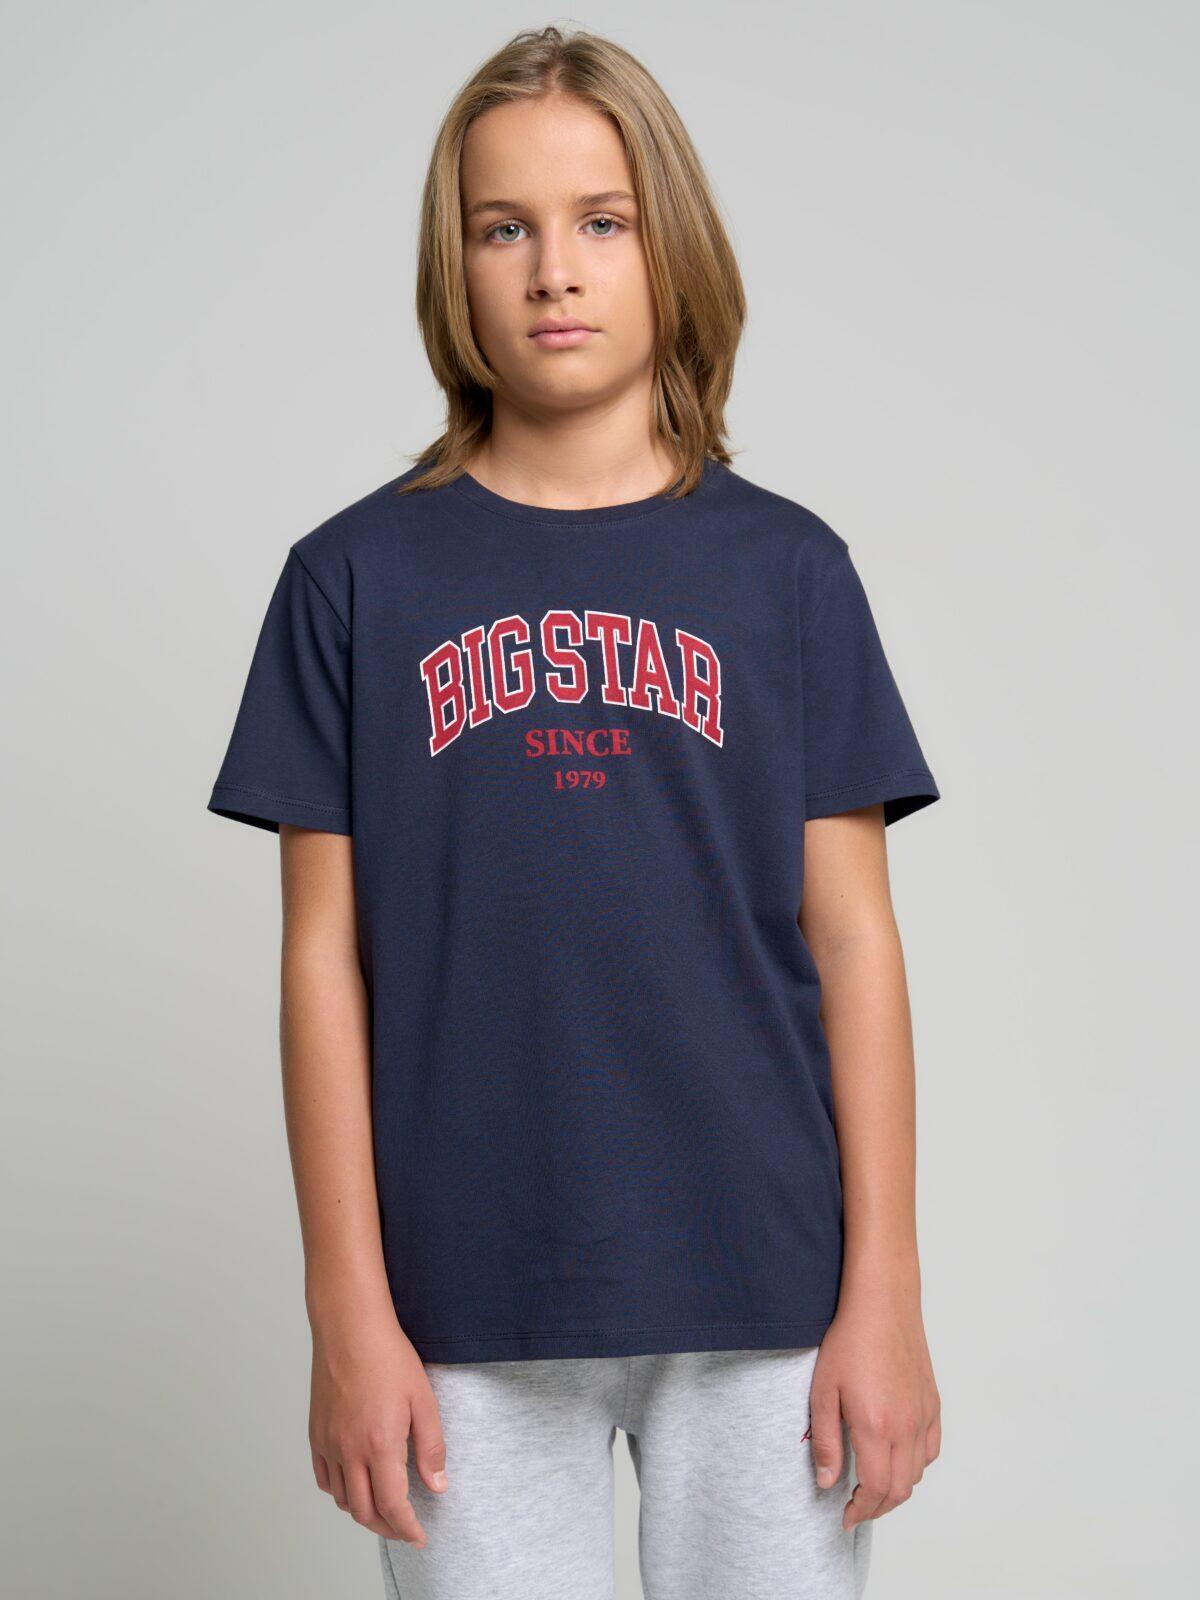 Big Star Kids's T-shirt 152268